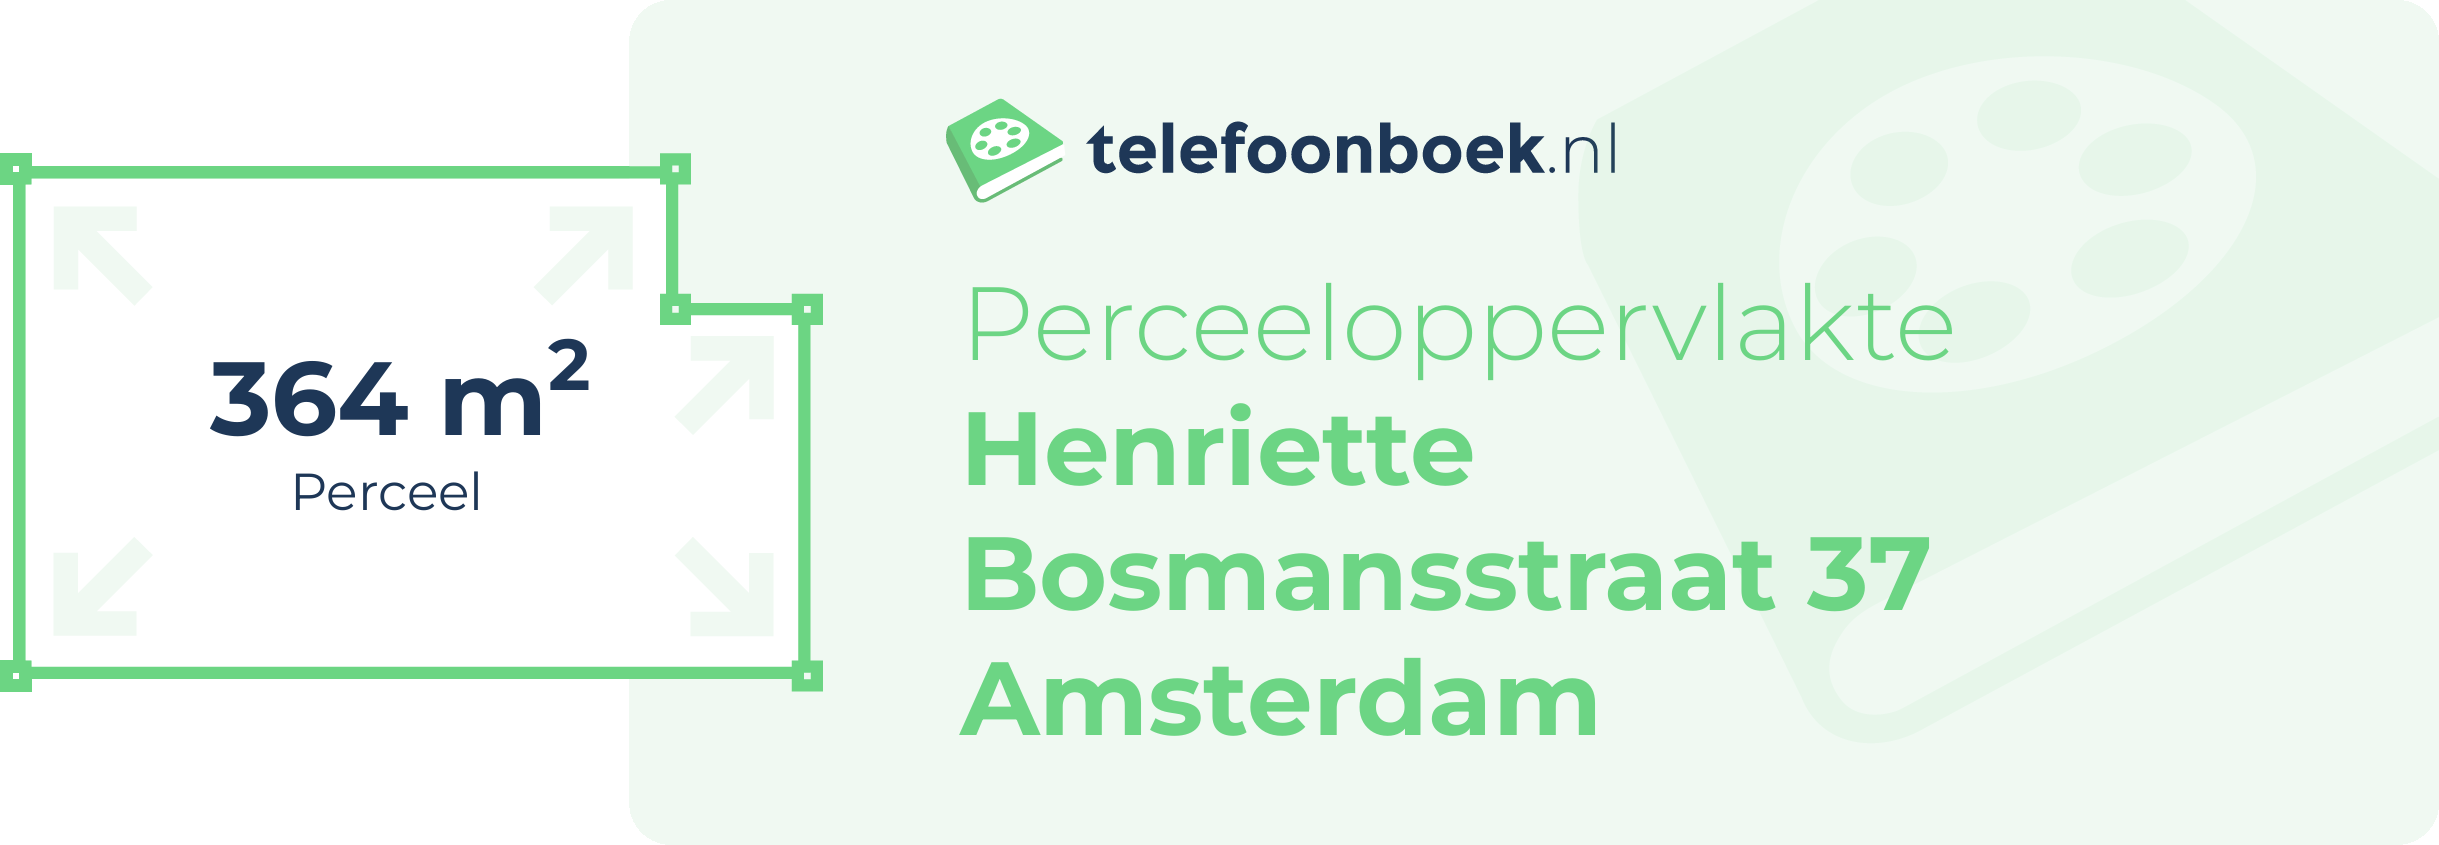 Perceeloppervlakte Henriette Bosmansstraat 37 Amsterdam